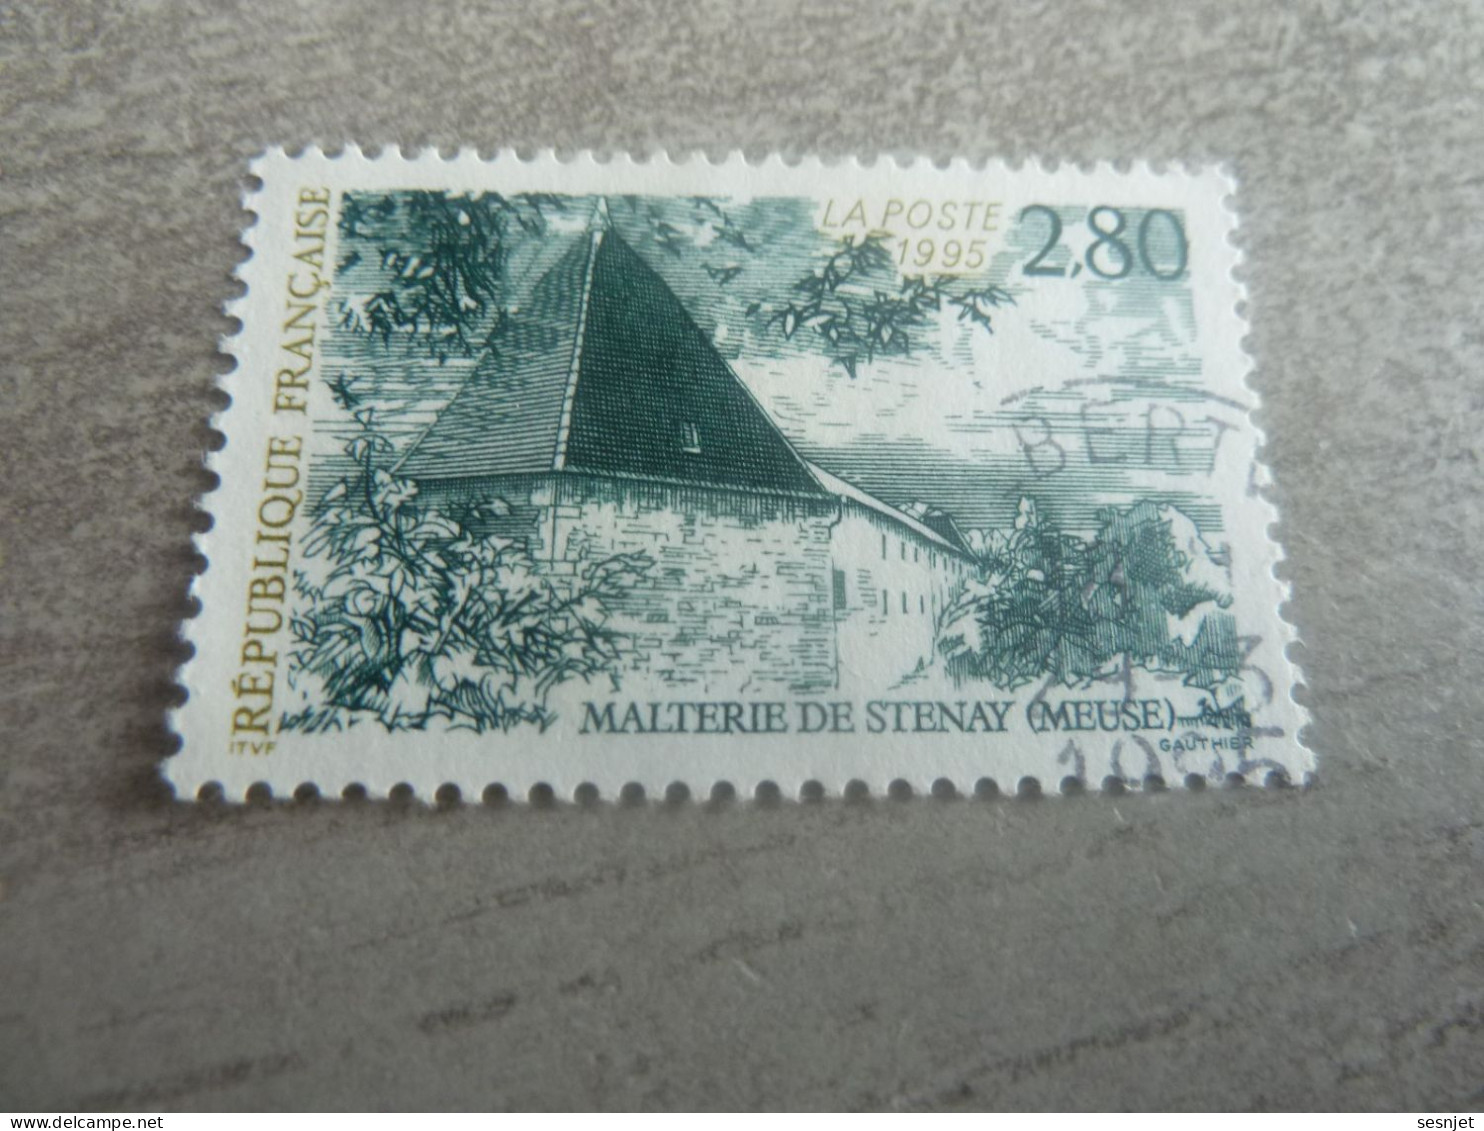 La Malterie De Stenay - Meuse - 2f.80 - Yt 2954 - Vert Foncé Et Olive Clair - Oblitéré - Année 1995 - - Usados